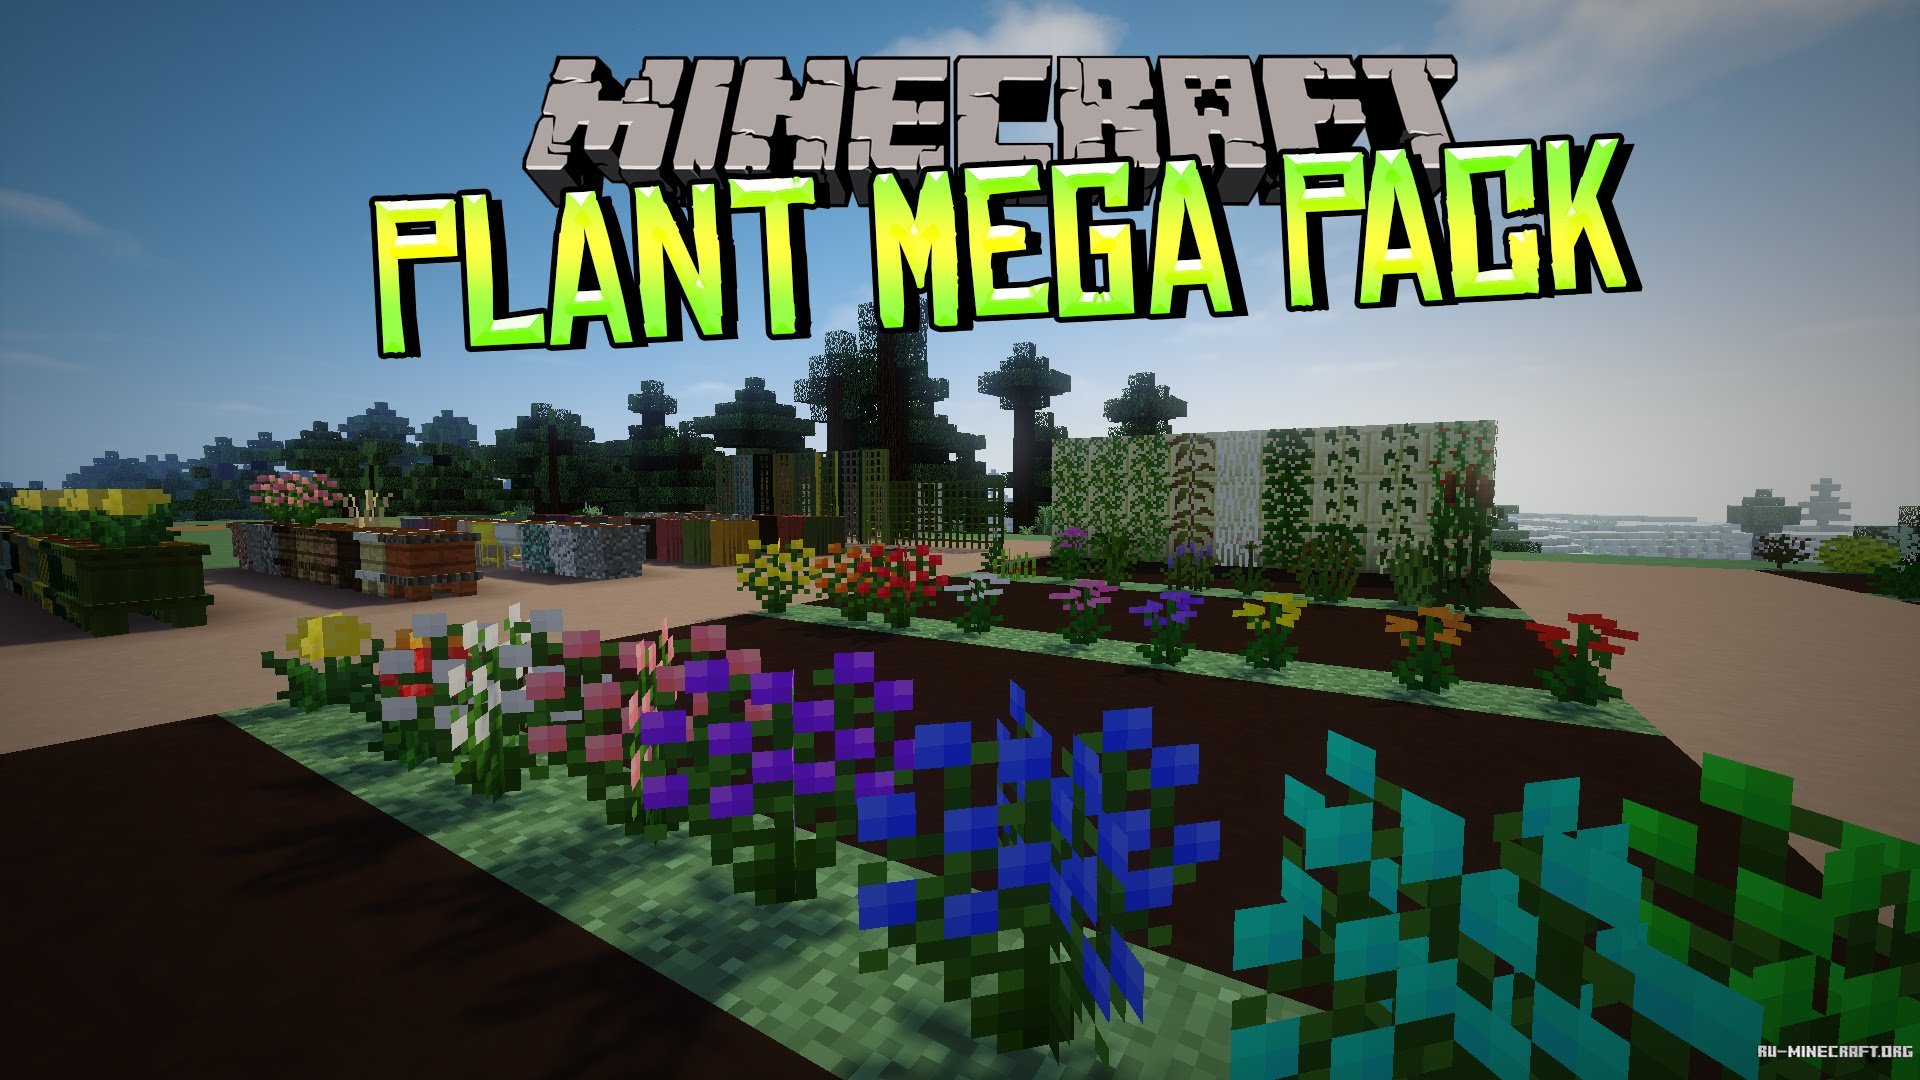 Plants майнкрафт. Plant Mega Pack Mod 1.12.2. Мод на растения. Майнкрафт мод на растения. Цветы и растения моды МАЙНКРАФ.